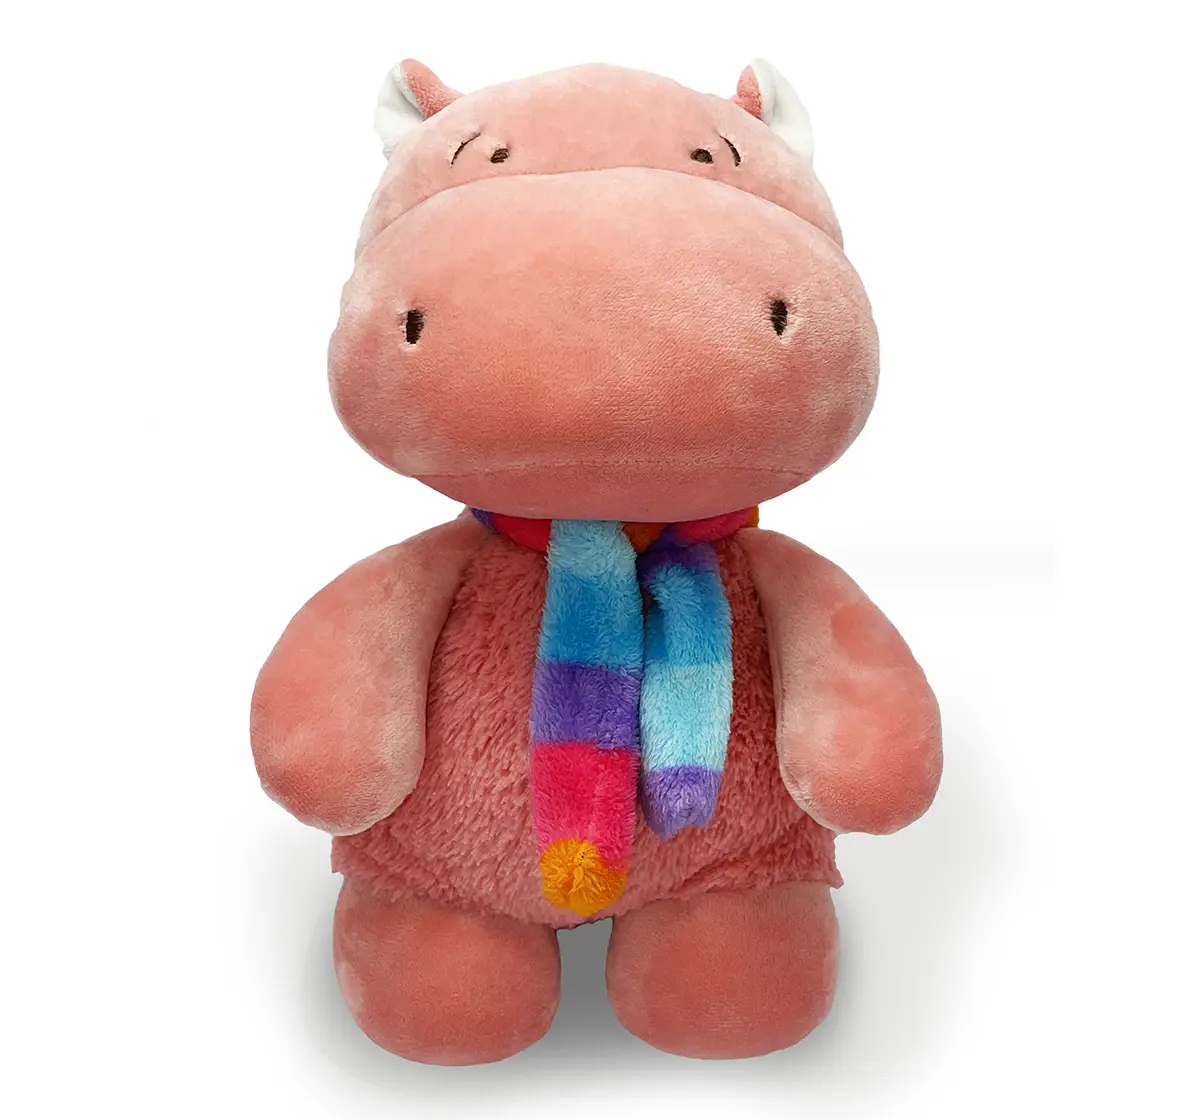 Mirada Super soft 25cm hippo with scarf Multicolor 3Y+